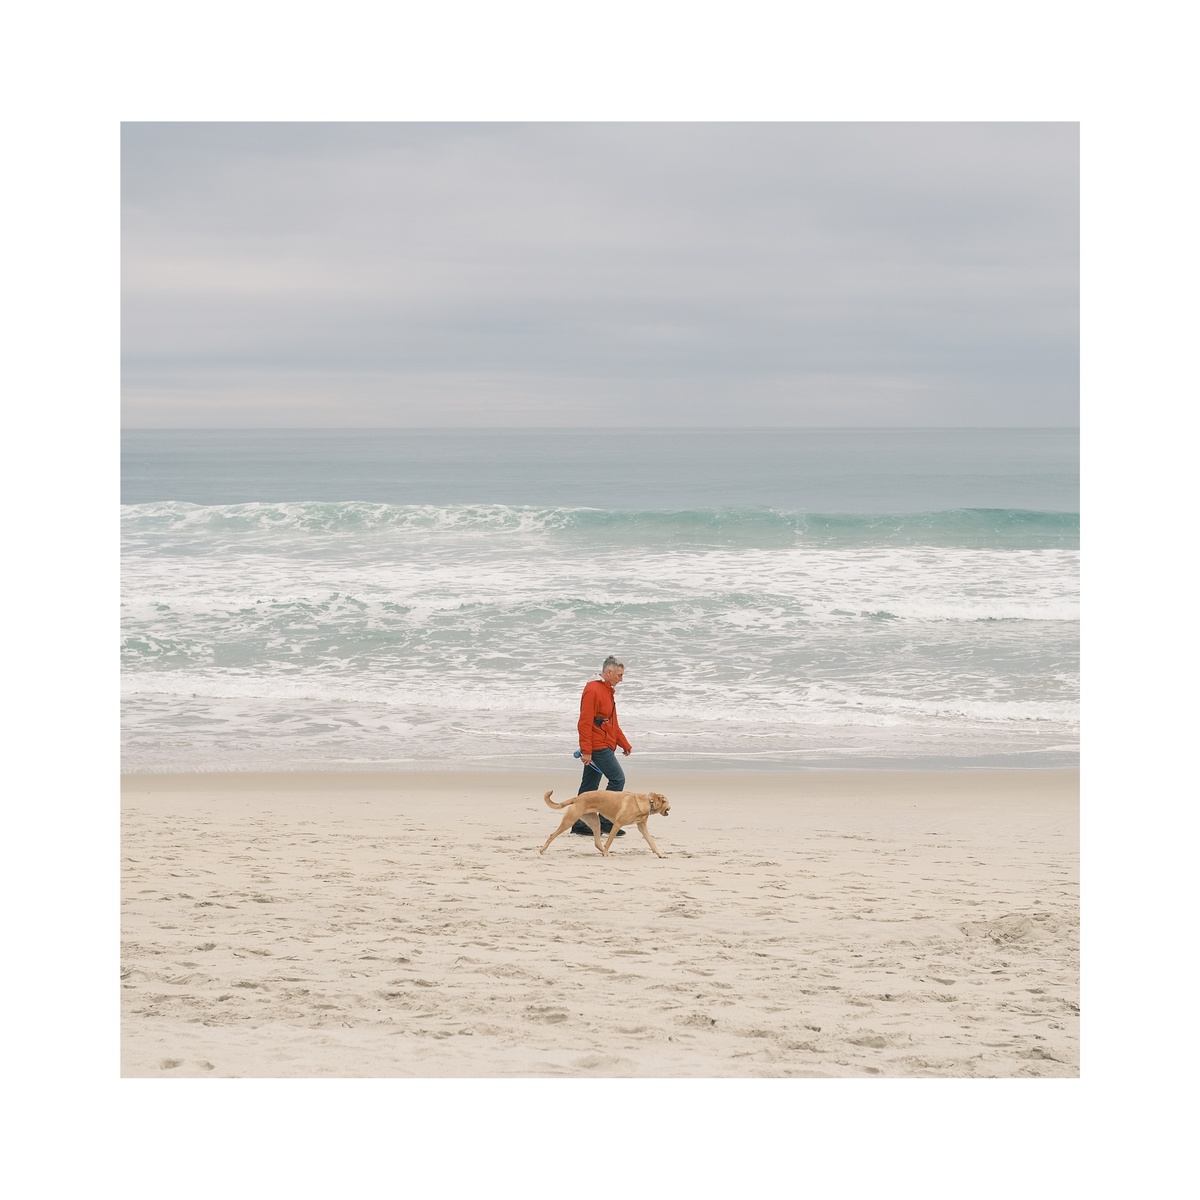 一个穿红衣服的男人正在海滩上遛狗。